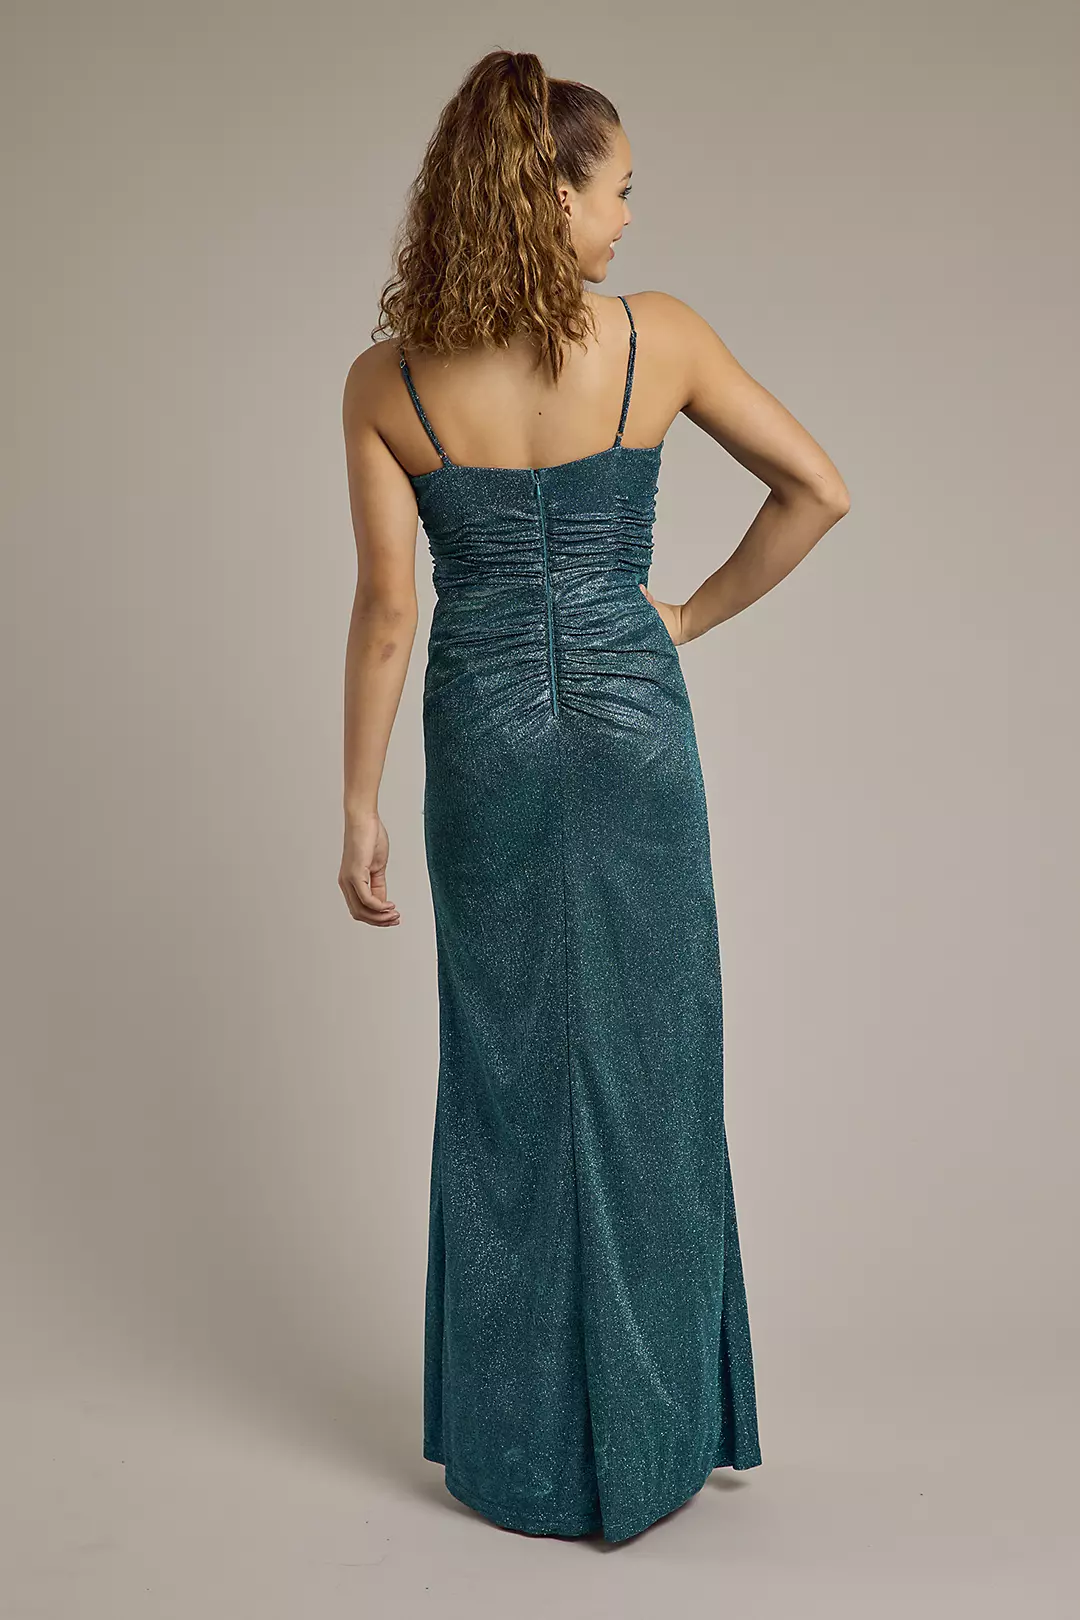 Glitter Knit Sheath Prom Dress with Ruching Image 2